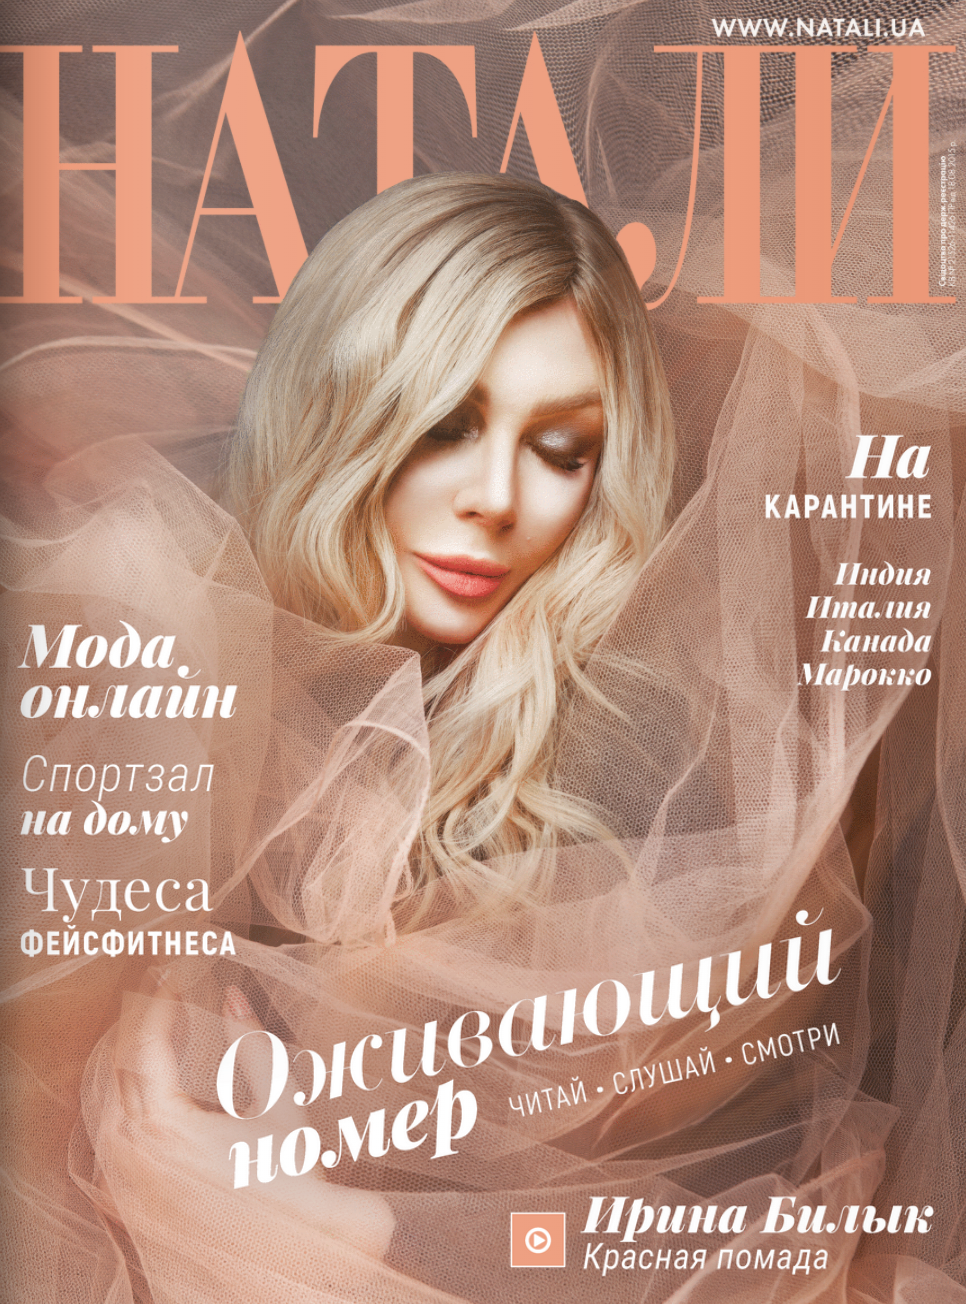 Ирина Билык на обложке журнала "Натали"